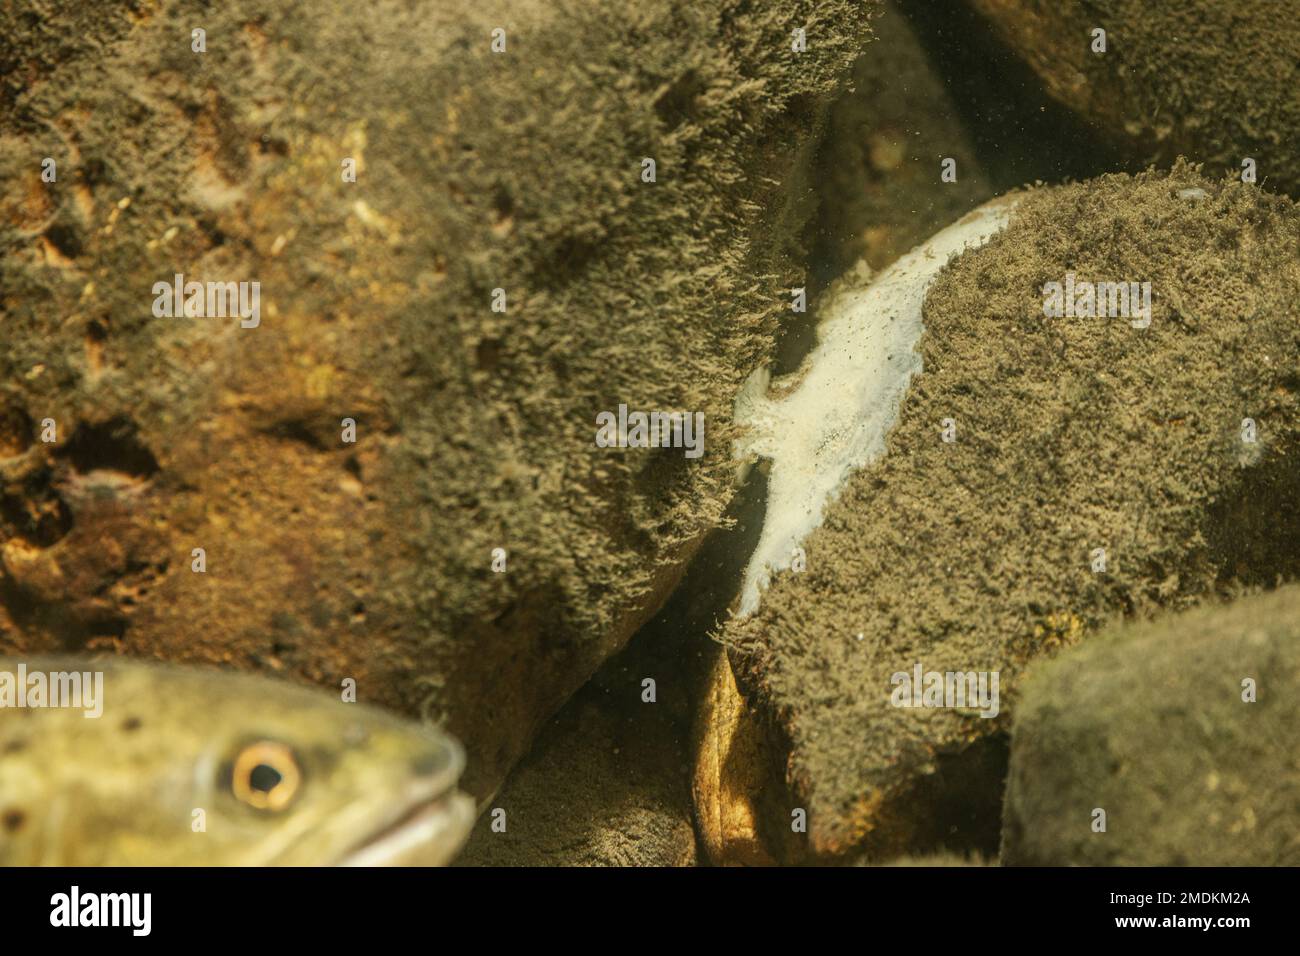 greater freshwater sponge (Ephydatia fluviatilis), sits on pebble stone with algae Stock Photo